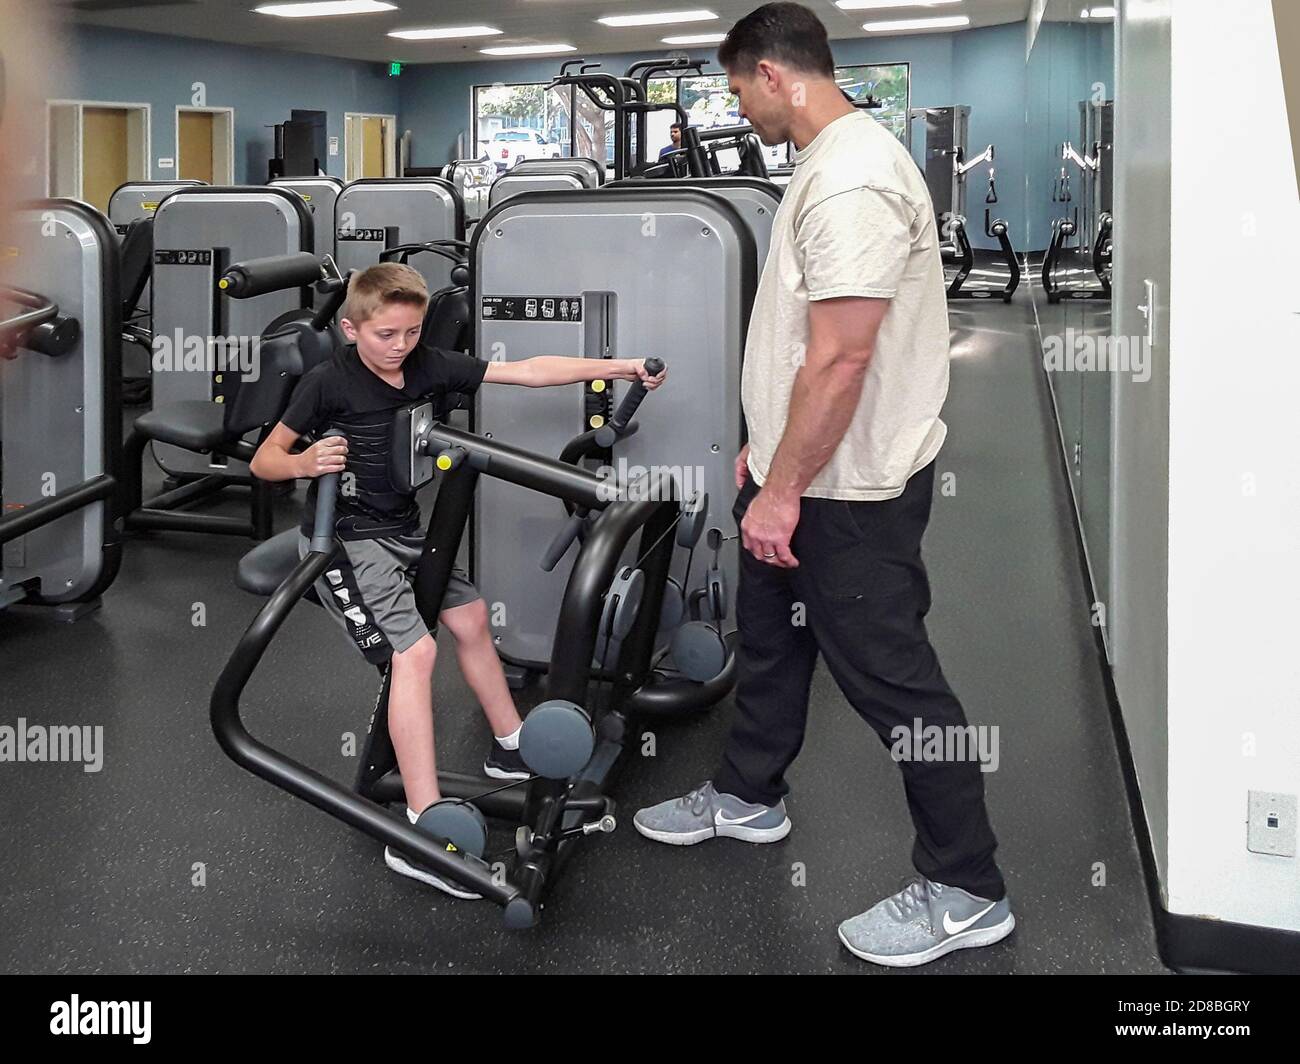 Mientras su padre mira, un niño trabaja en una máquina de ejercicio en un gimnasio del sur de California. Foto de stock